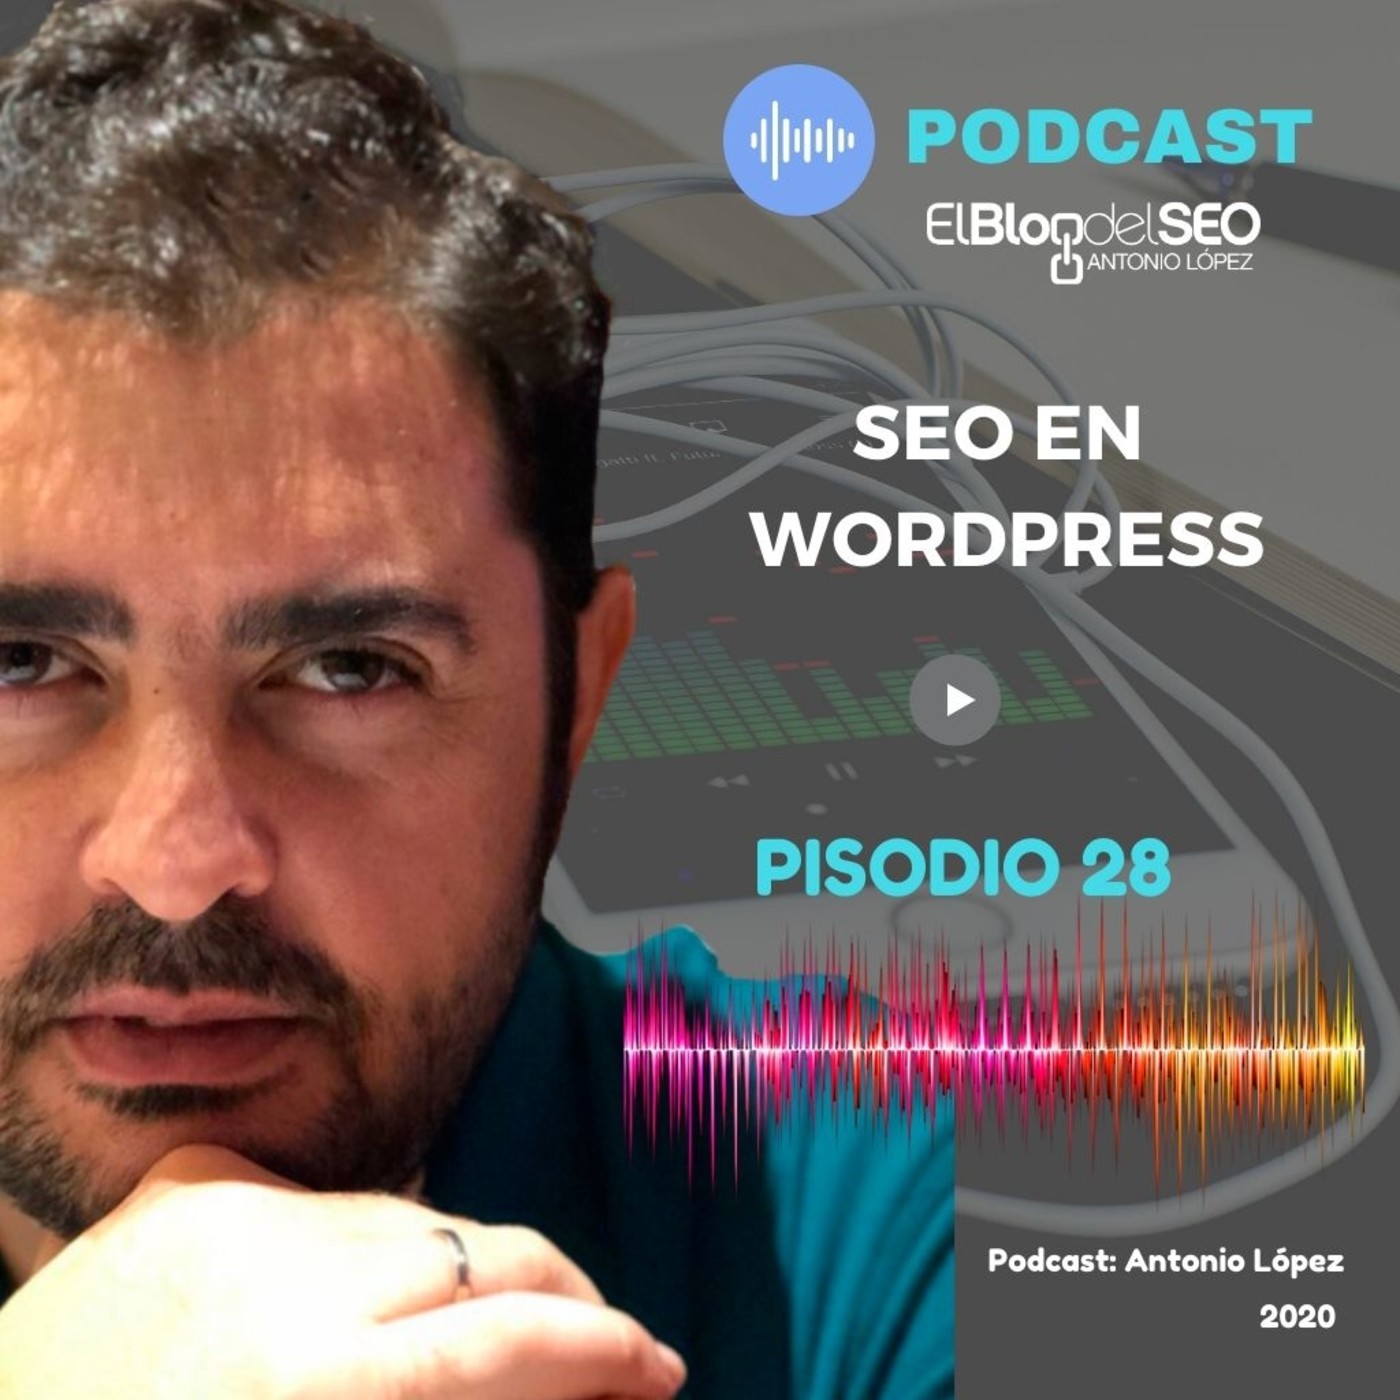 SEO en Wordpress. Episodio 28 Podcast El Blog del SEO